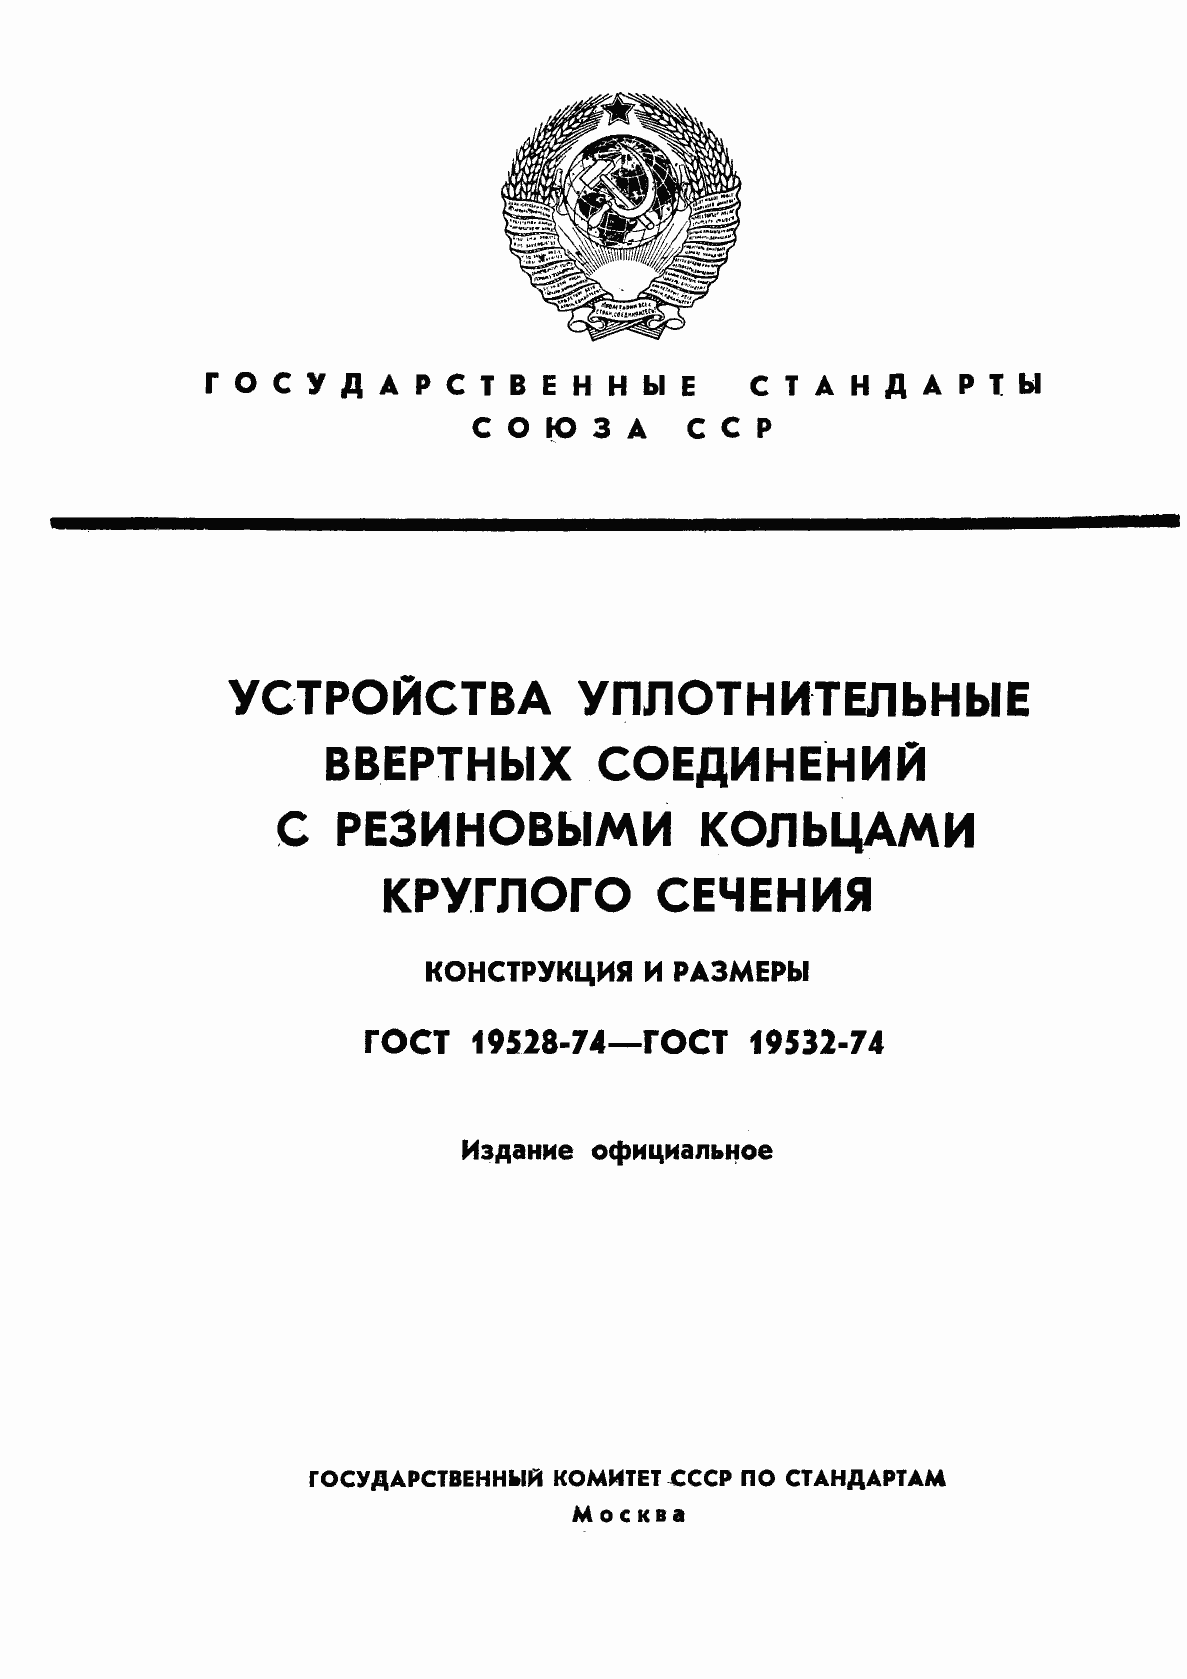  19528-74.  1